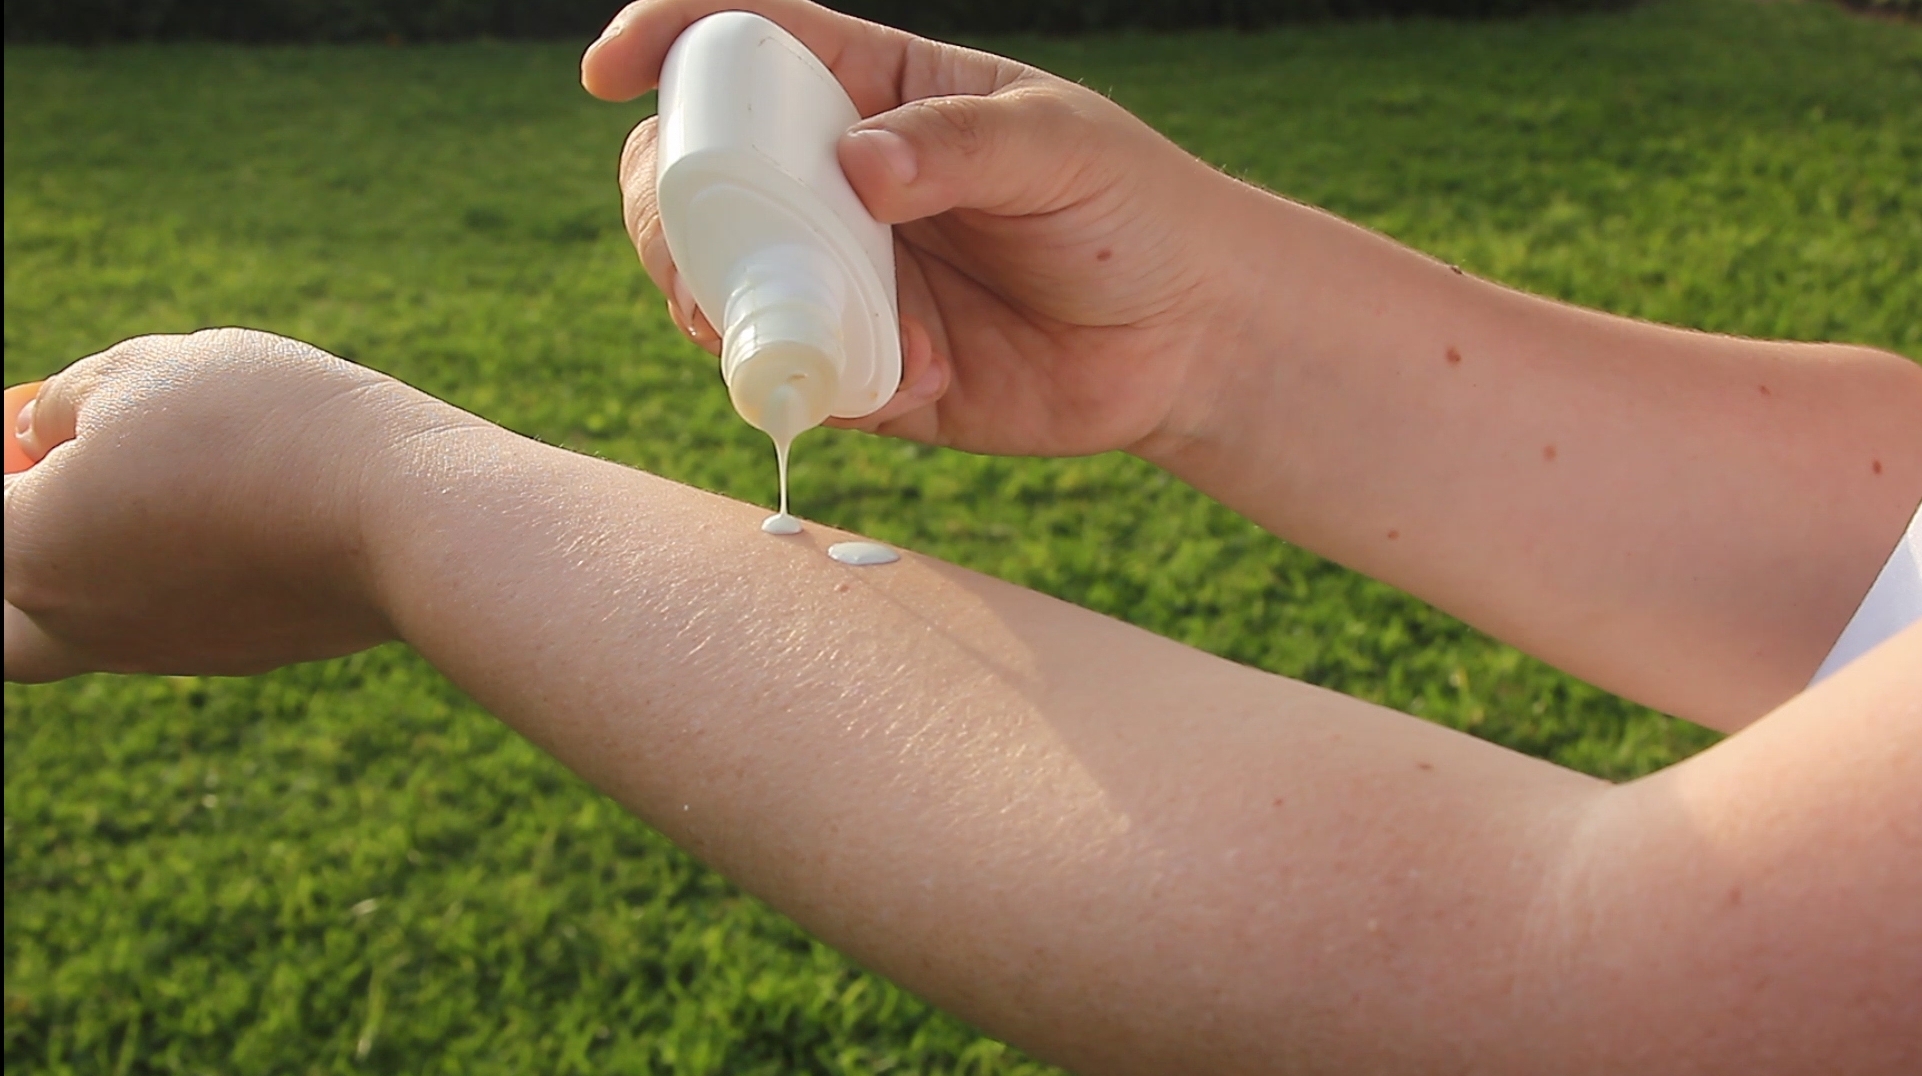 Essalud - EsSalud recomienda evitar sobreexposición al sol al detectar más de 200 lesiones a la piel asociadas con cáncer